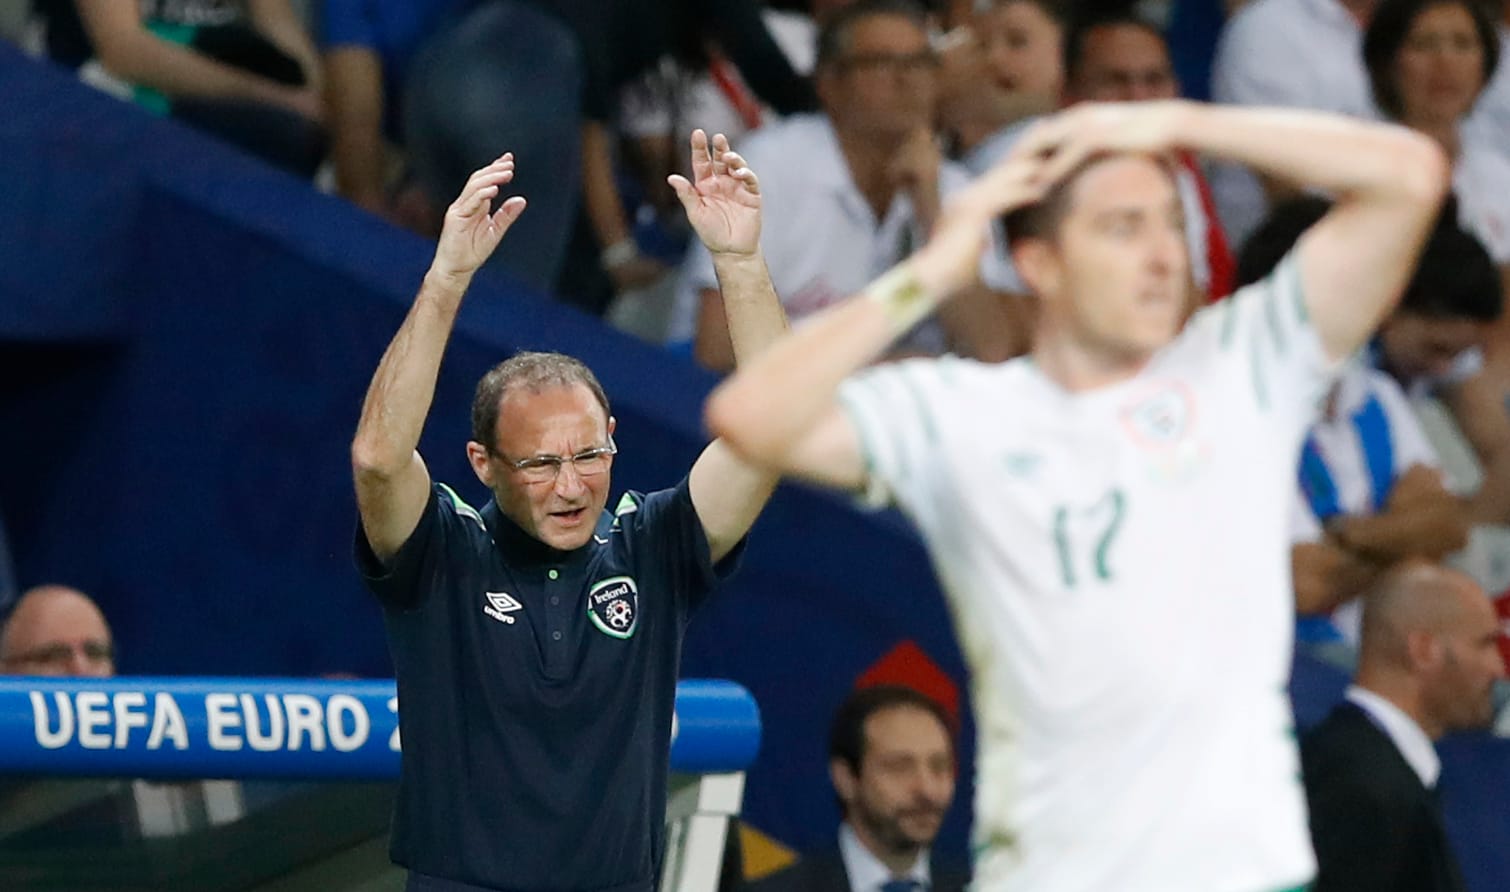 Die Iren versuchen alles, aber ein Treffer gelingt ihnen zunächst nicht. Die Reaktion von Trainer Martin O'Neill spricht eine deutliche Sprache.